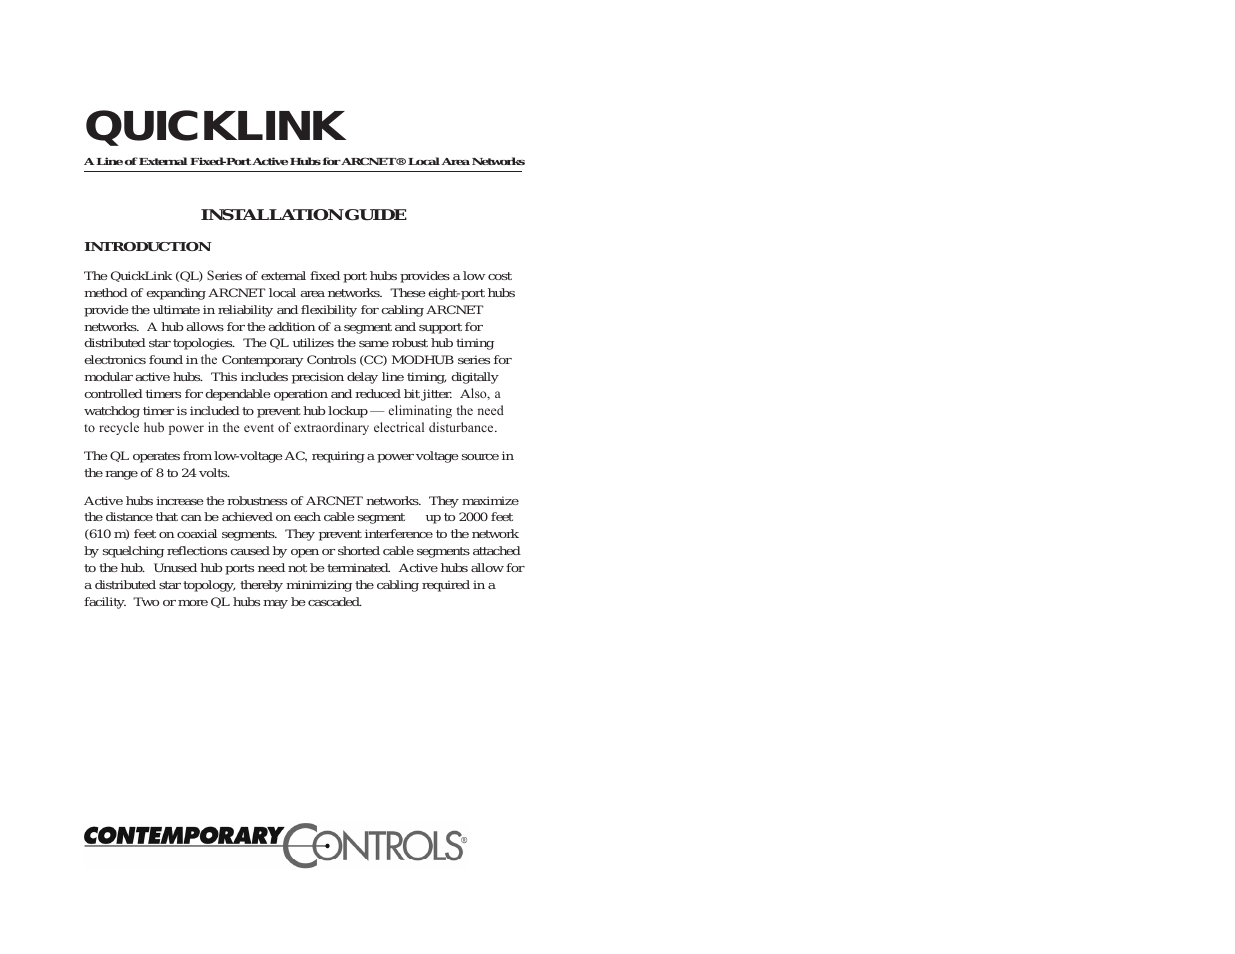 QuickLink Active Hubs